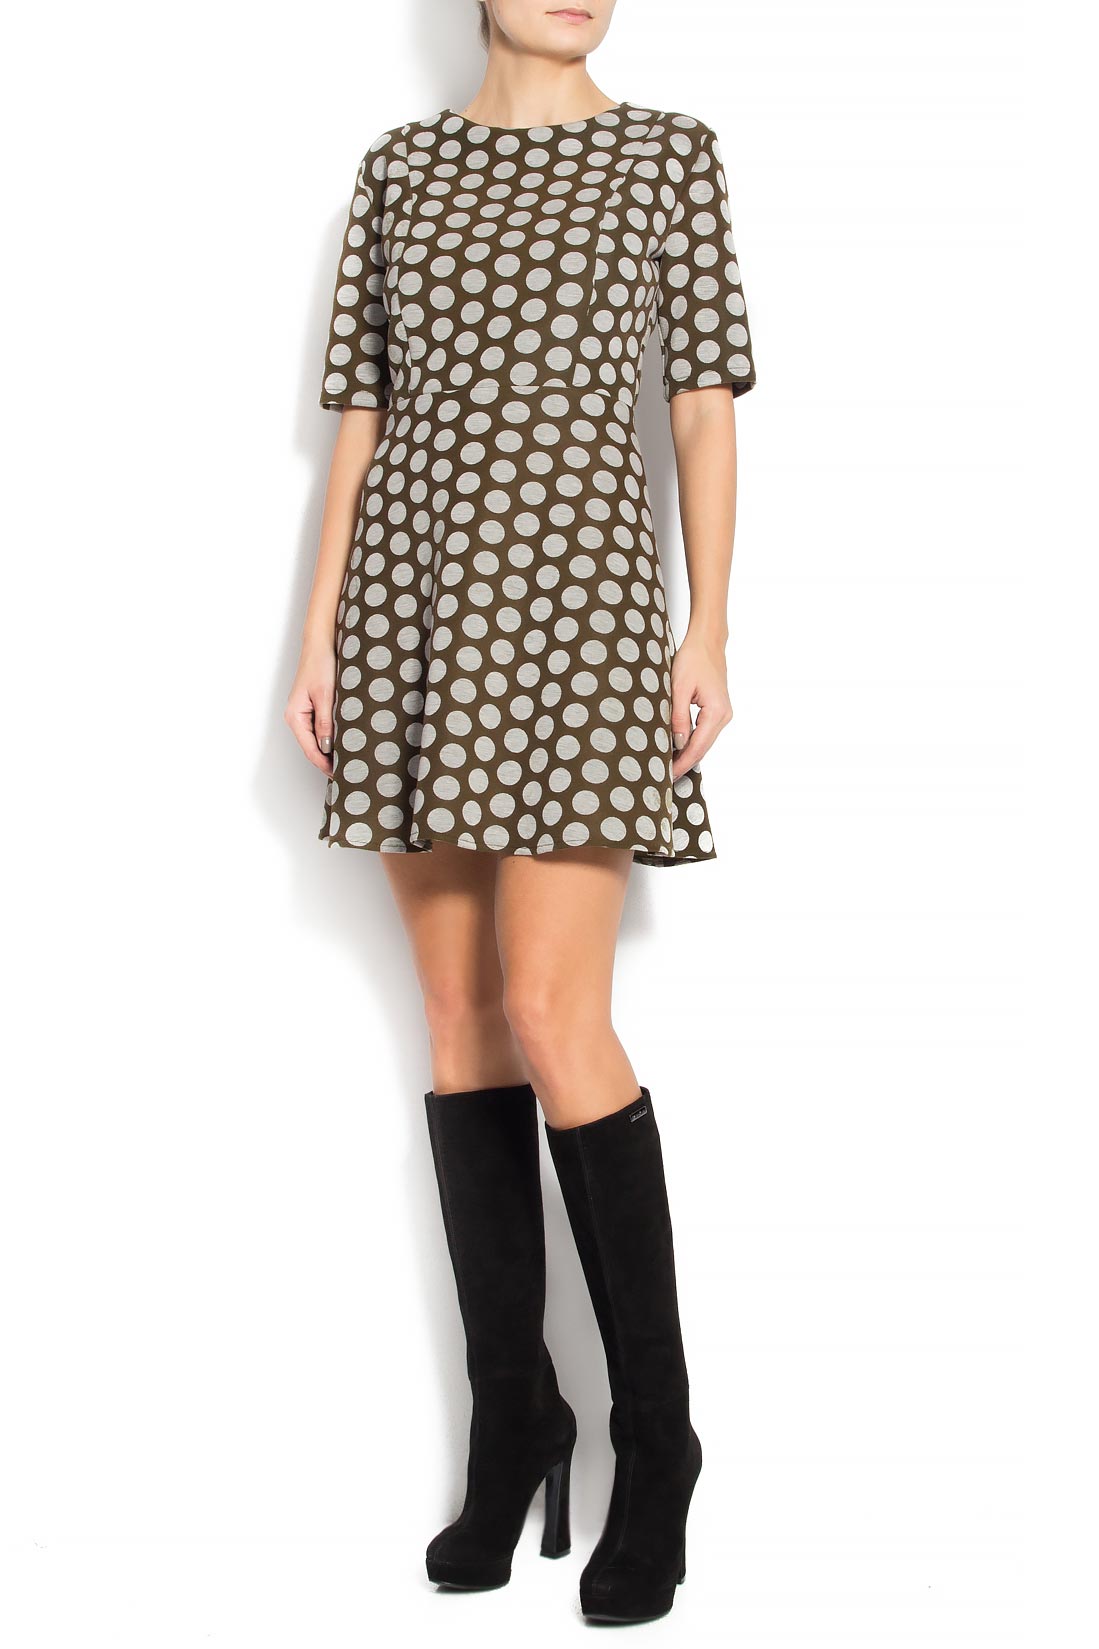 Polka-dot crepe mini dress Bluzat image 0